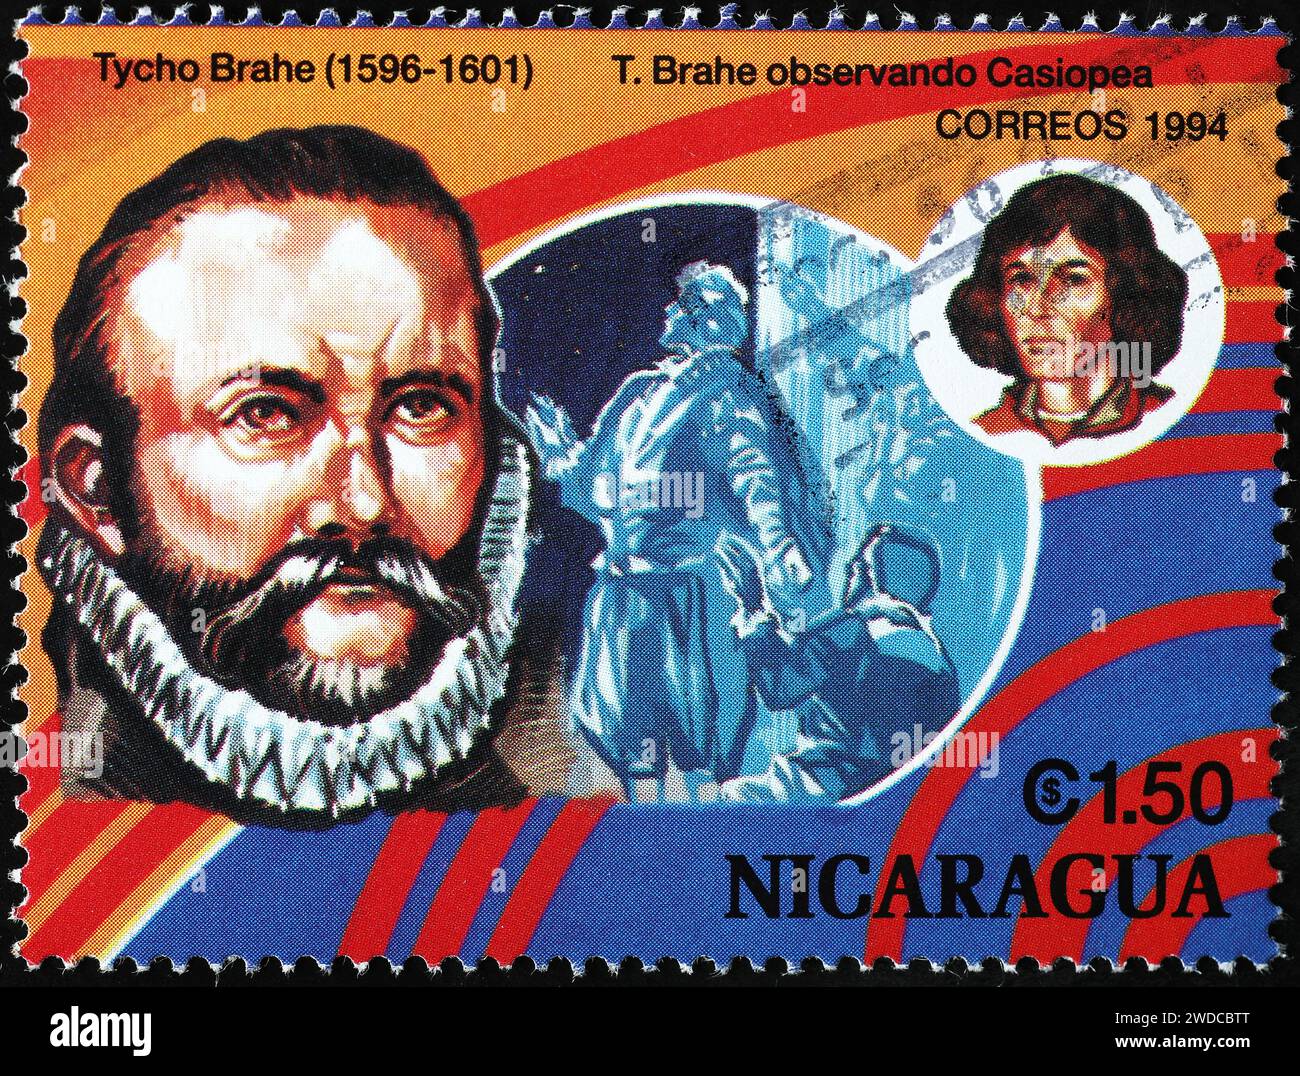 Lo scienziato Tycho Brahe sul francobollo Foto Stock